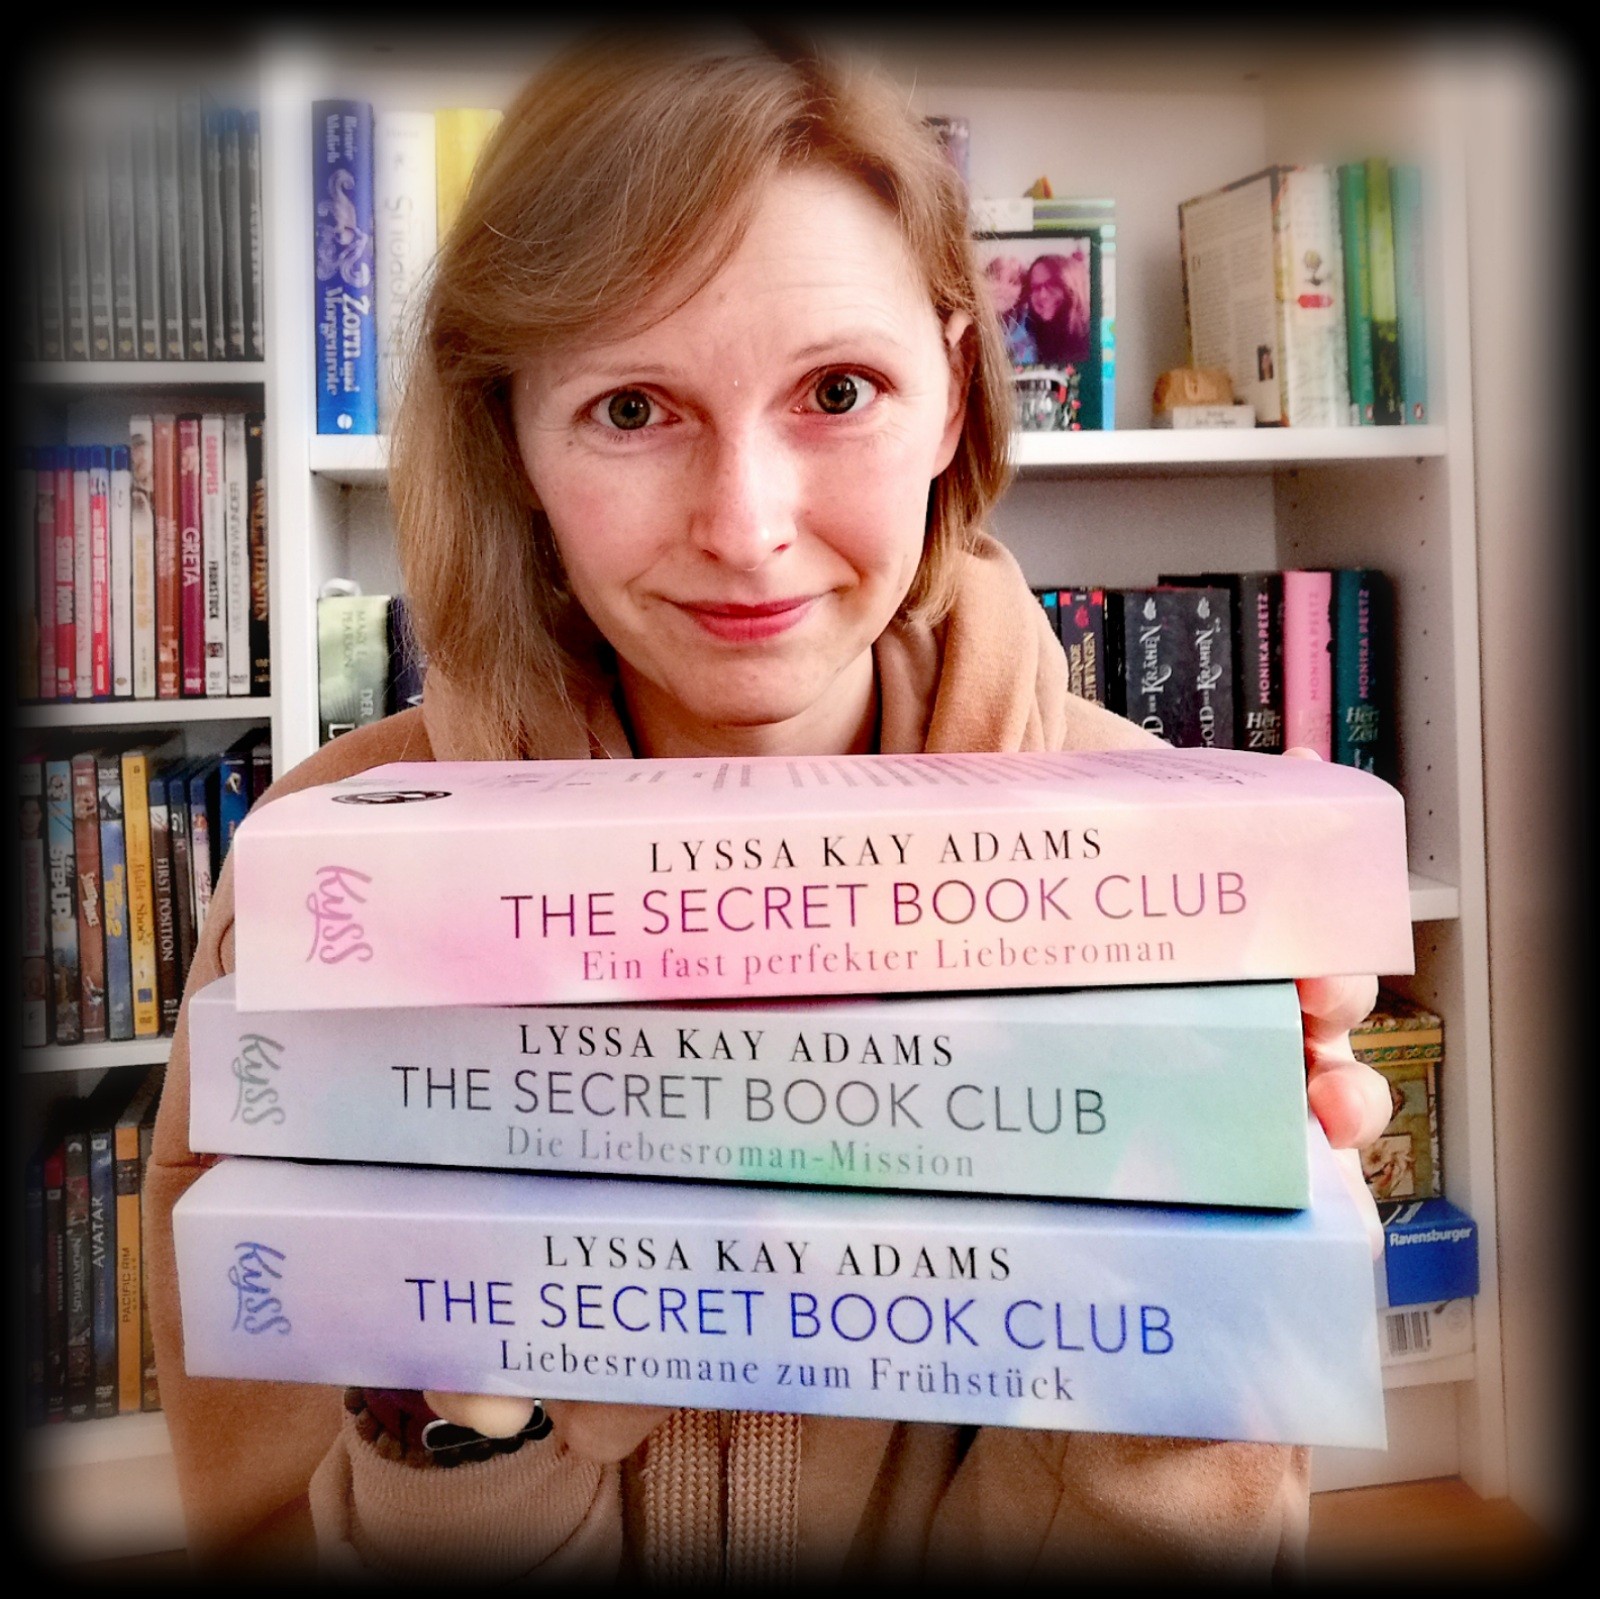 „The Secret Book Club“ (I - III) von Lyssa Kay Adams – Männer, die Liebesromane lesen, um ihre (potenziellen) Partnerinnen, besser zu verstehen